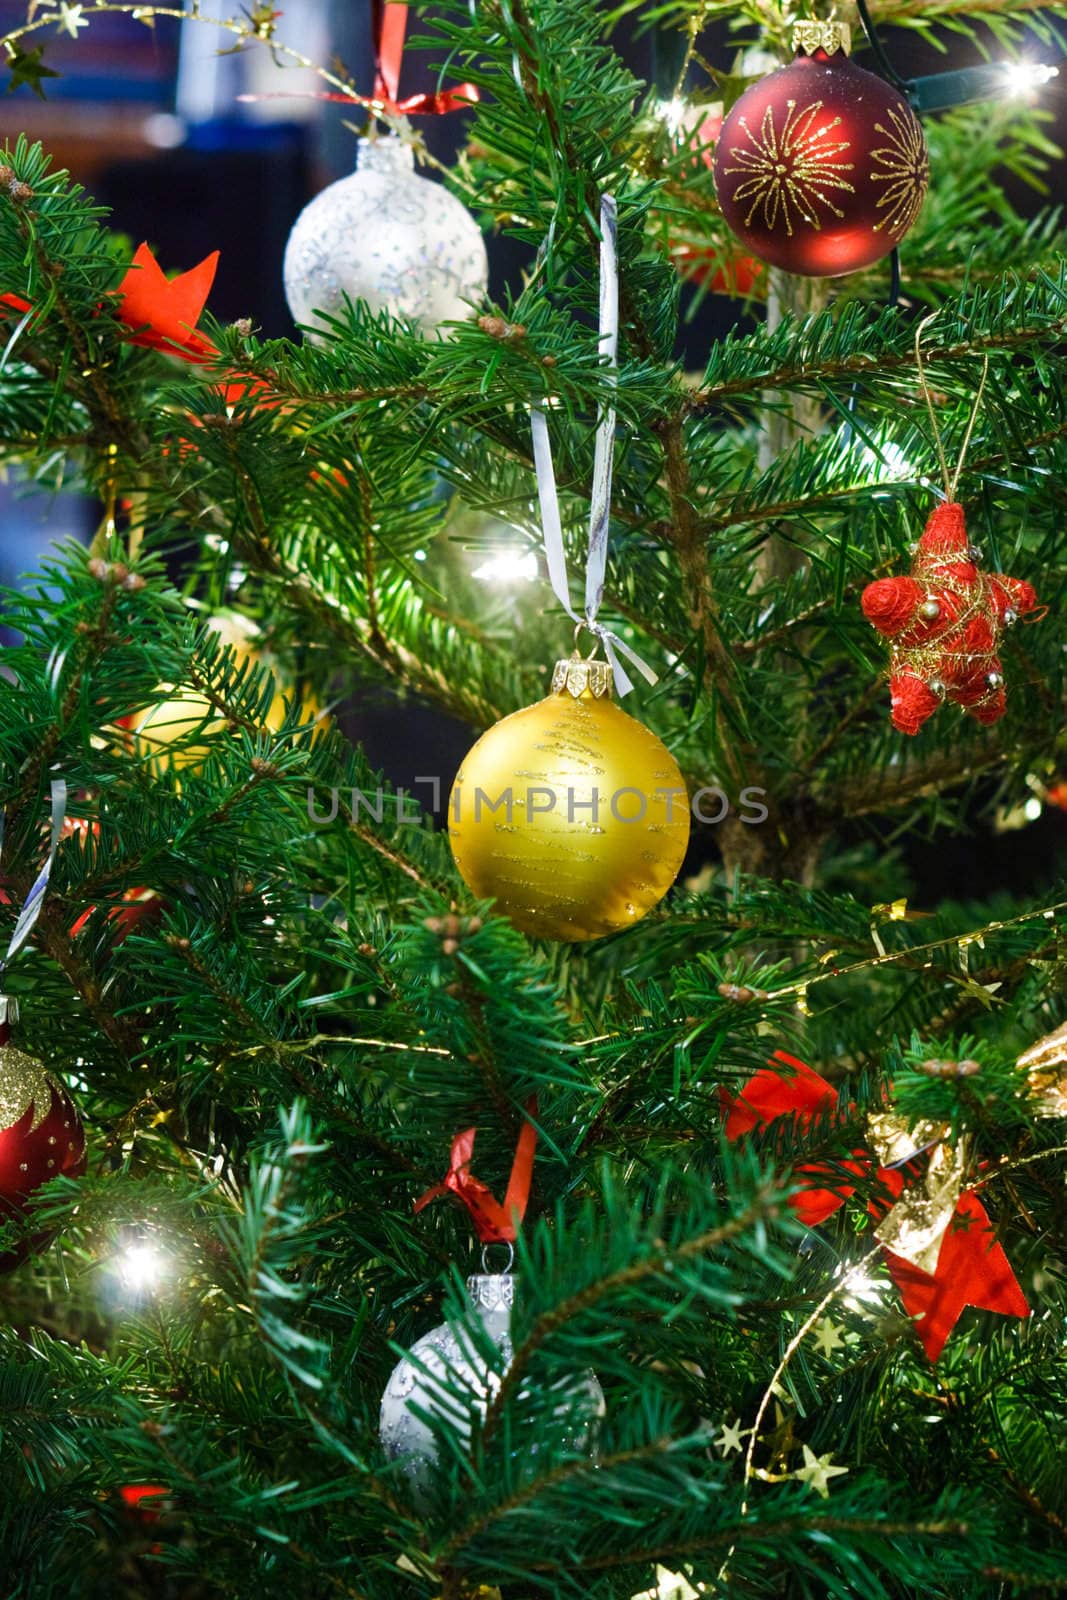 Christmas balls garland and lights on the fir tree